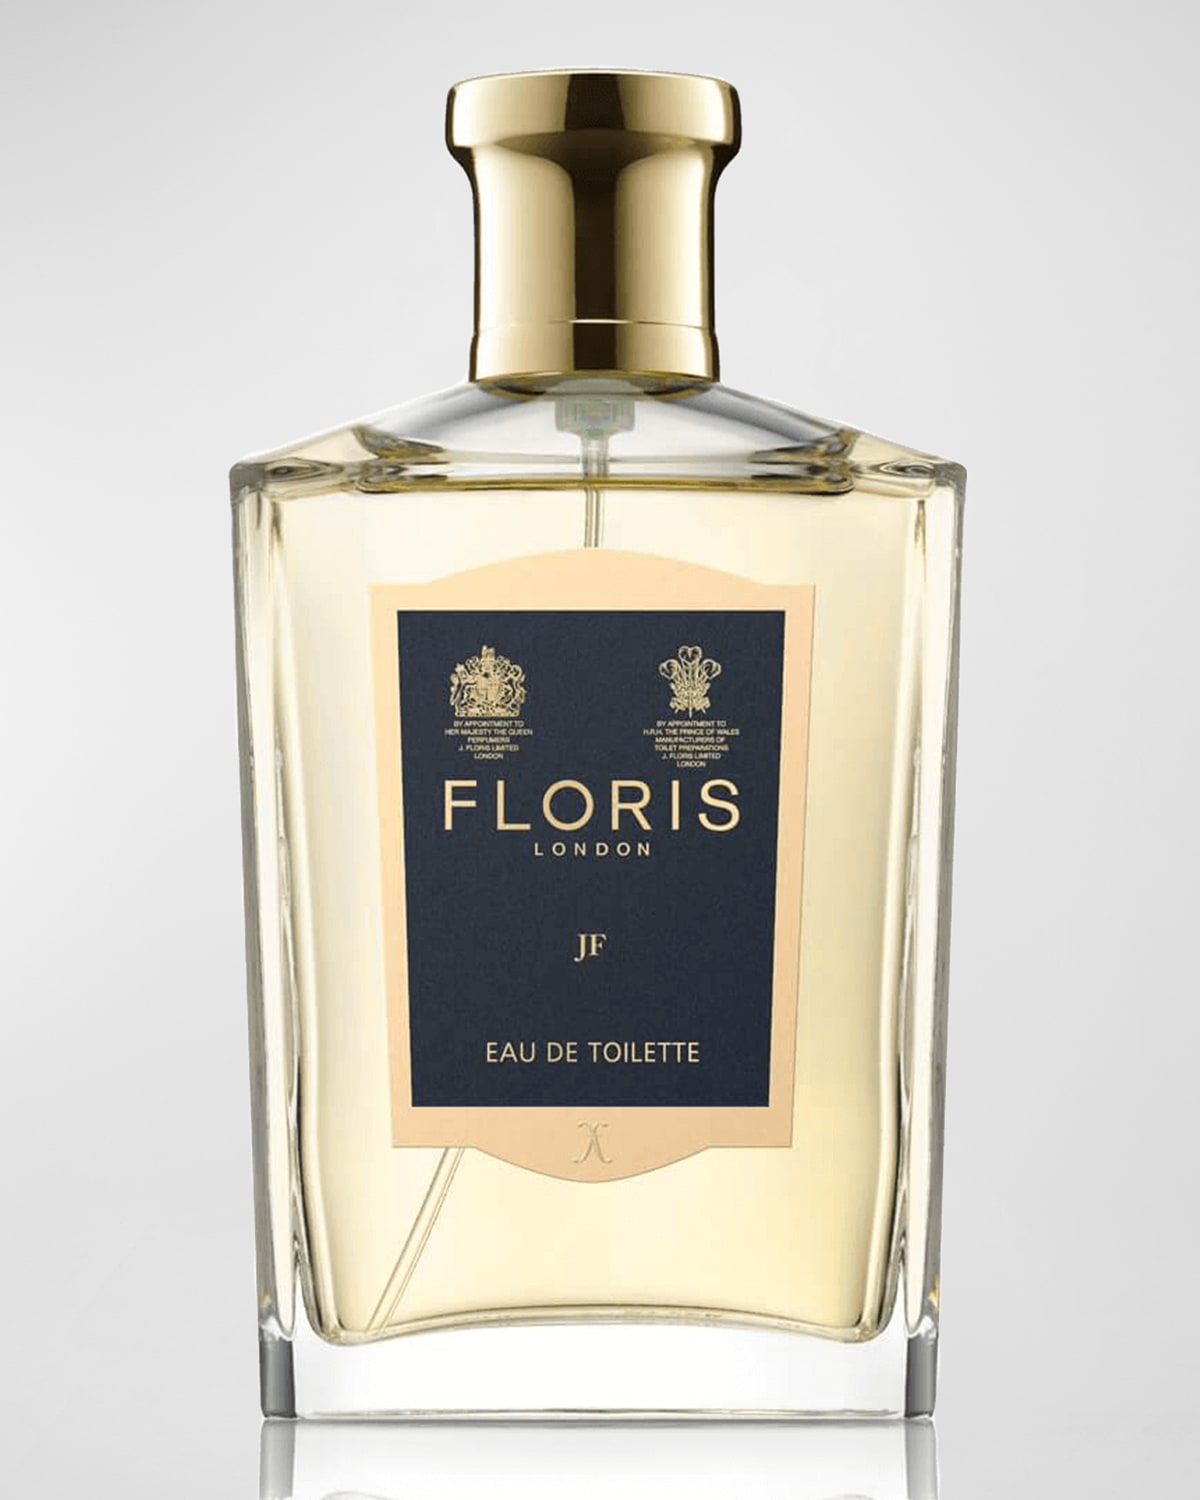 Floris London JF Eau de Toilette, 3.4 oz.